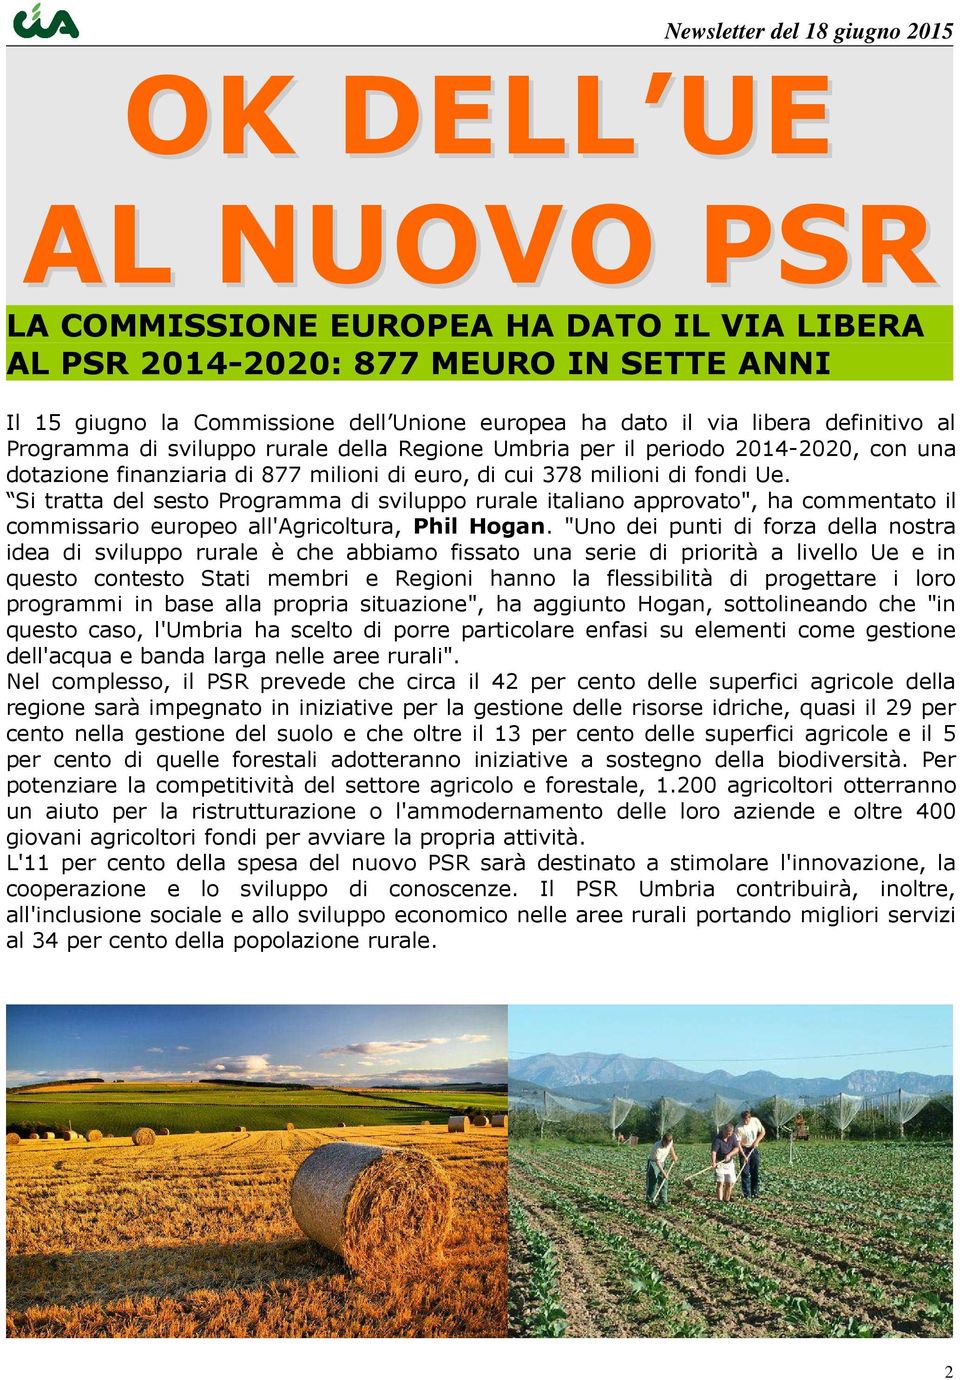 Si tratta del sesto Programma di sviluppo rurale italiano approvato", ha commentato il commissario europeo all'agricoltura, Phil Hogan.